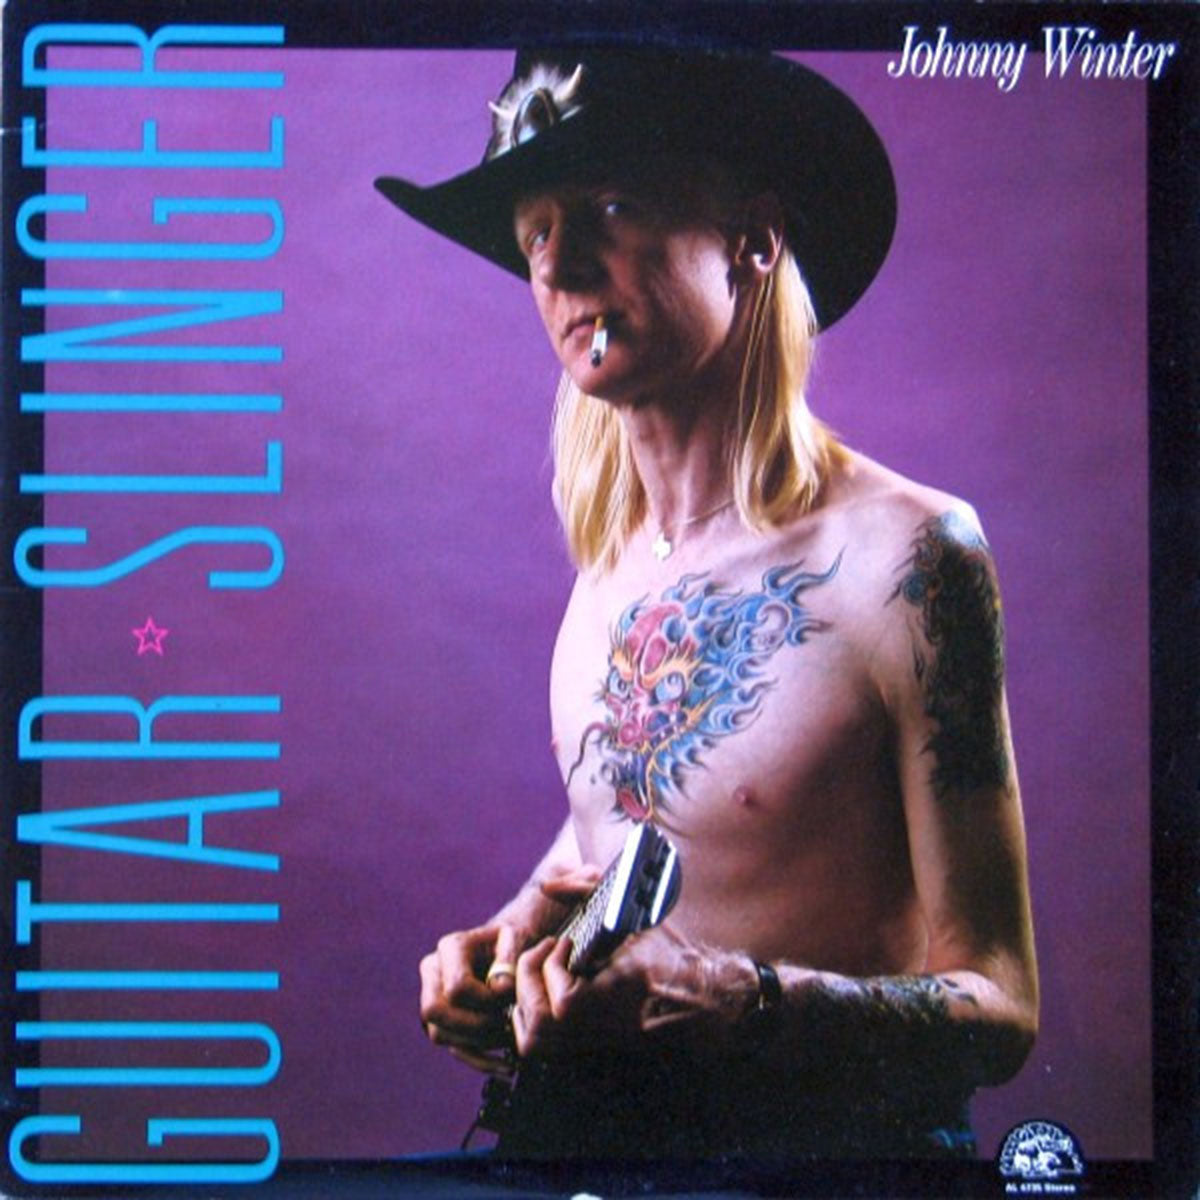 Johnny Winter – Guitar Slinger - 1984!